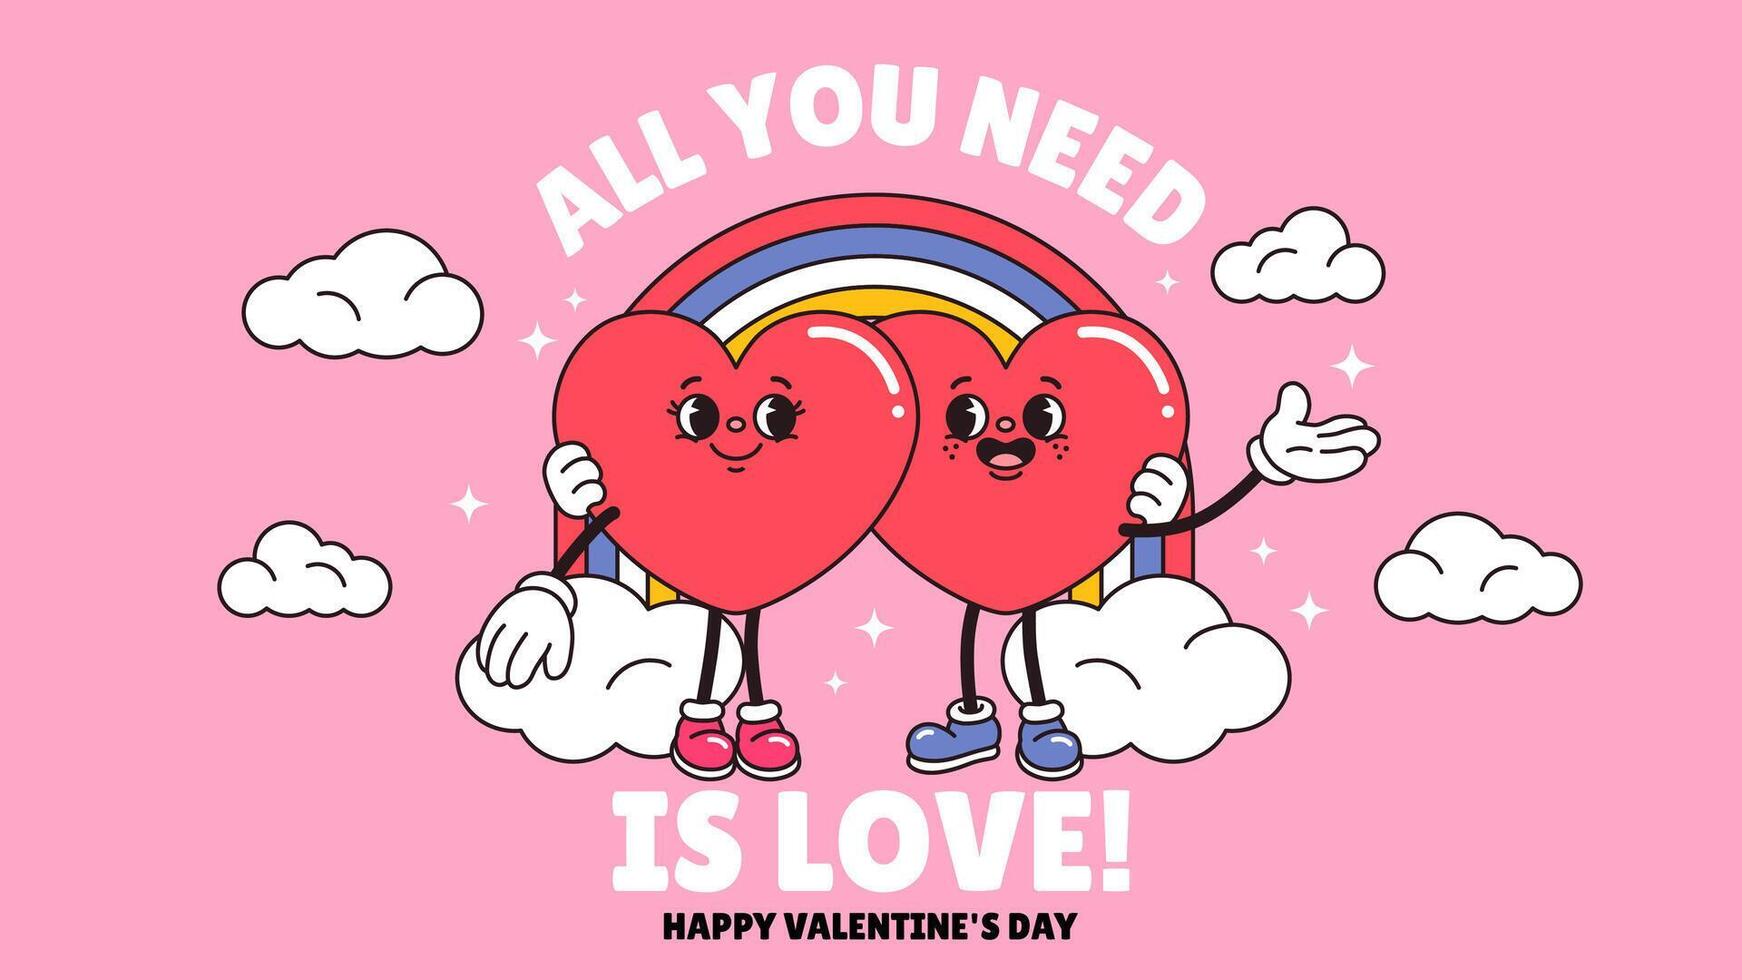 allemaal u nodig hebben is liefde, gelukkig Valentijnsdag dag typografie poster. hippie Jaren 60 jaren 70 retro stijl. y2k stijlvol. tekenfilm hart karakter paar omarmen banier, achtergrond. groovy sjabloon, groet kaart. vector